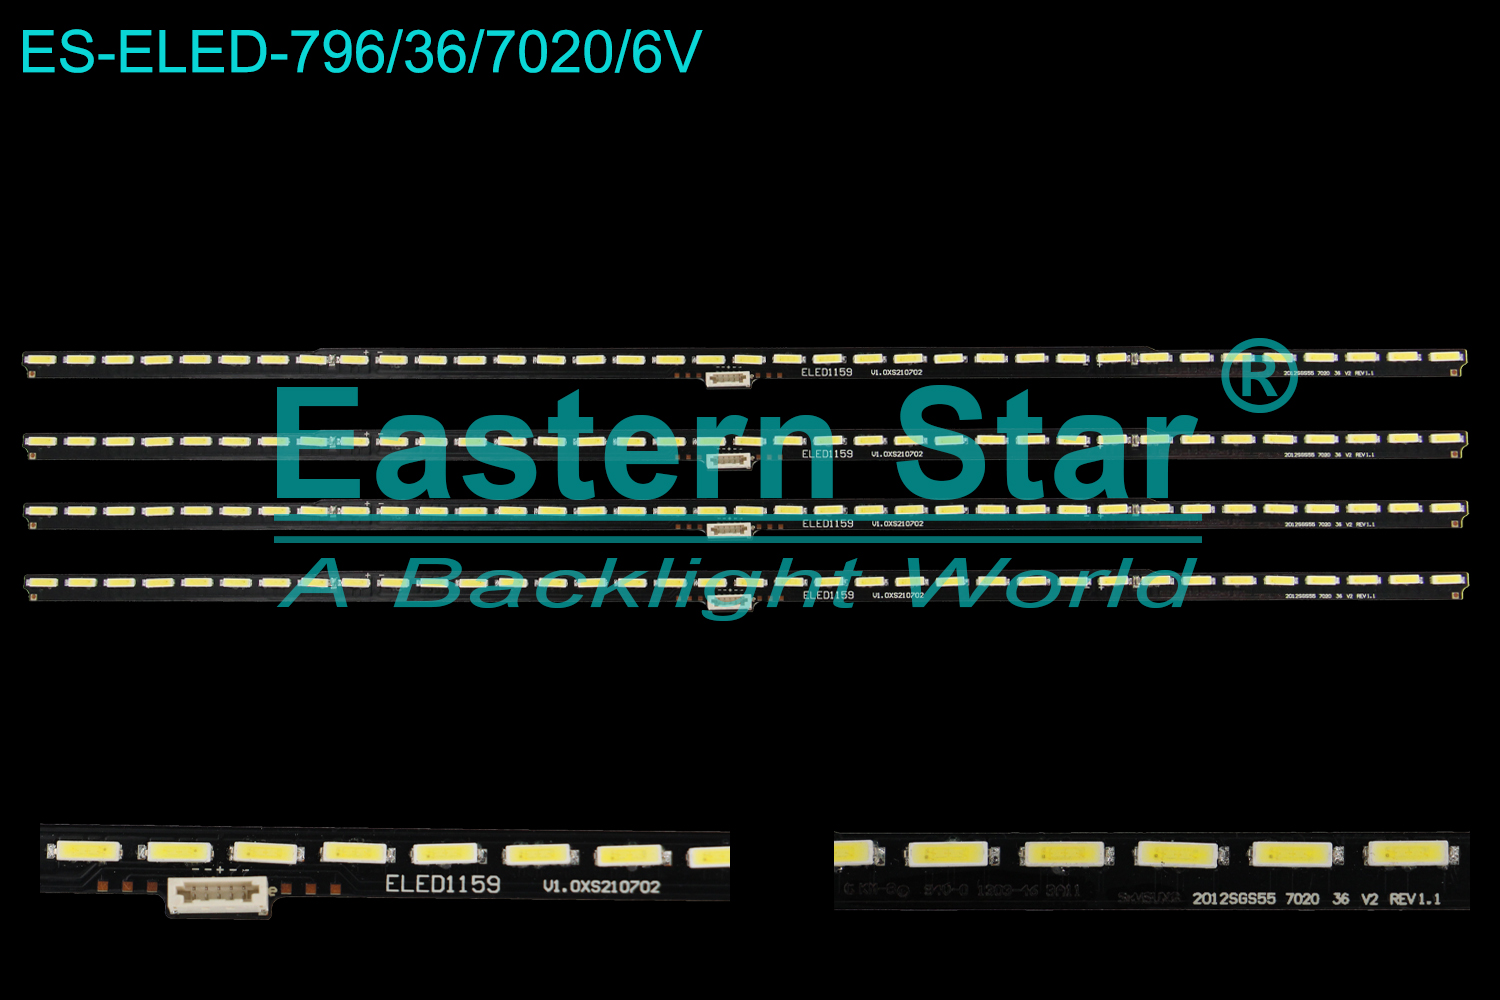 ES-ELED-796 ELED/EDGE TV backlight use for 55'' Philips 55PFL7007K ELED1159 2012SGS55 7020 36 V2 REV1.1  LED STRIPS(4)